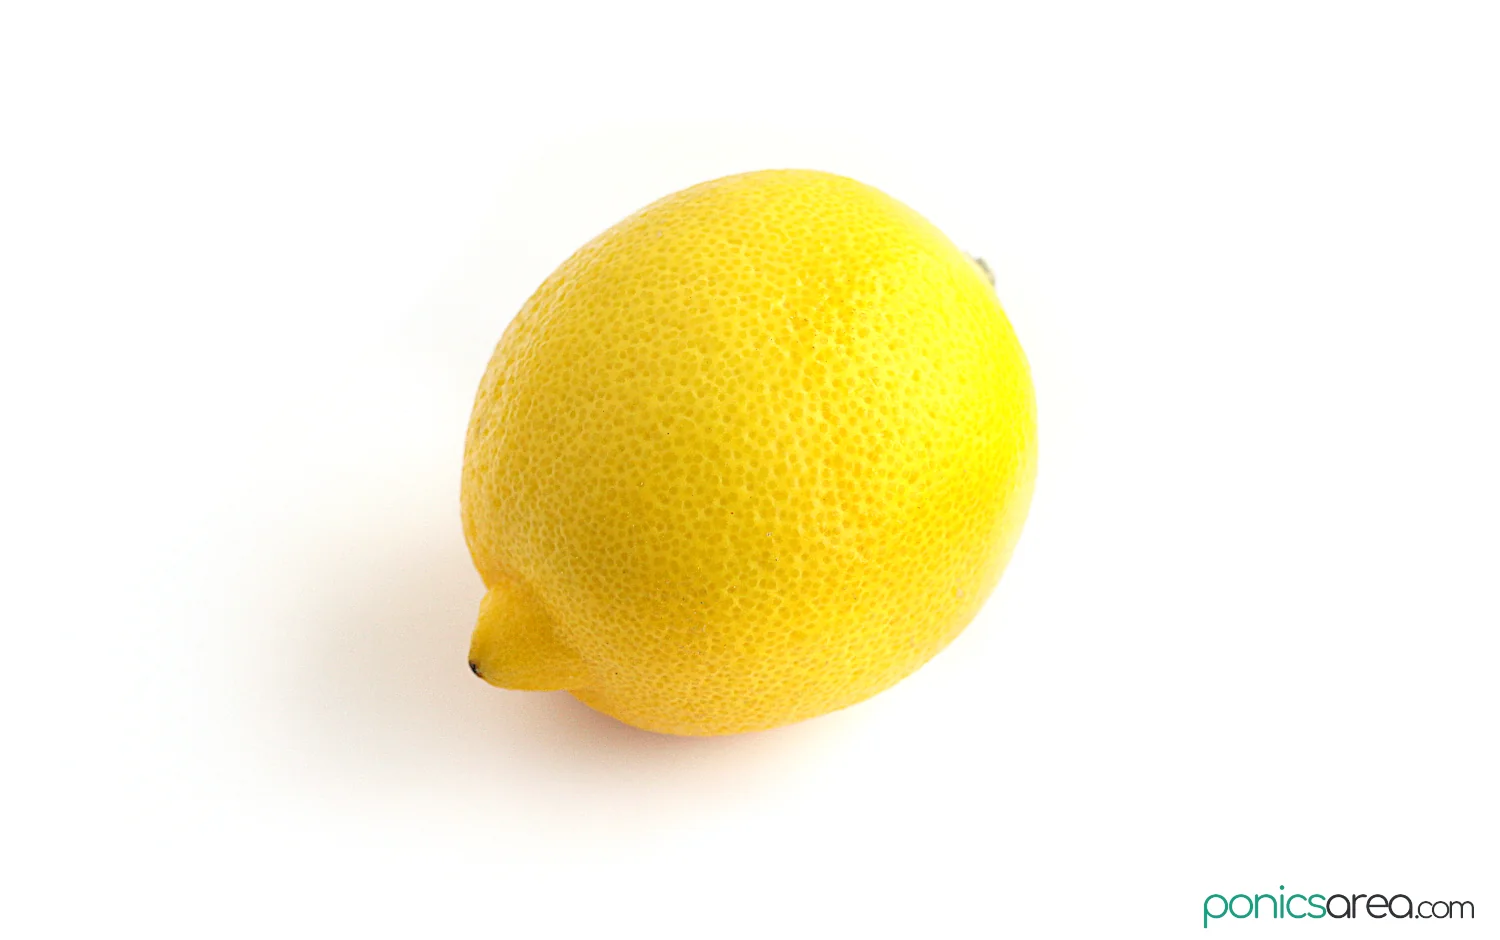 lemon is a fruit